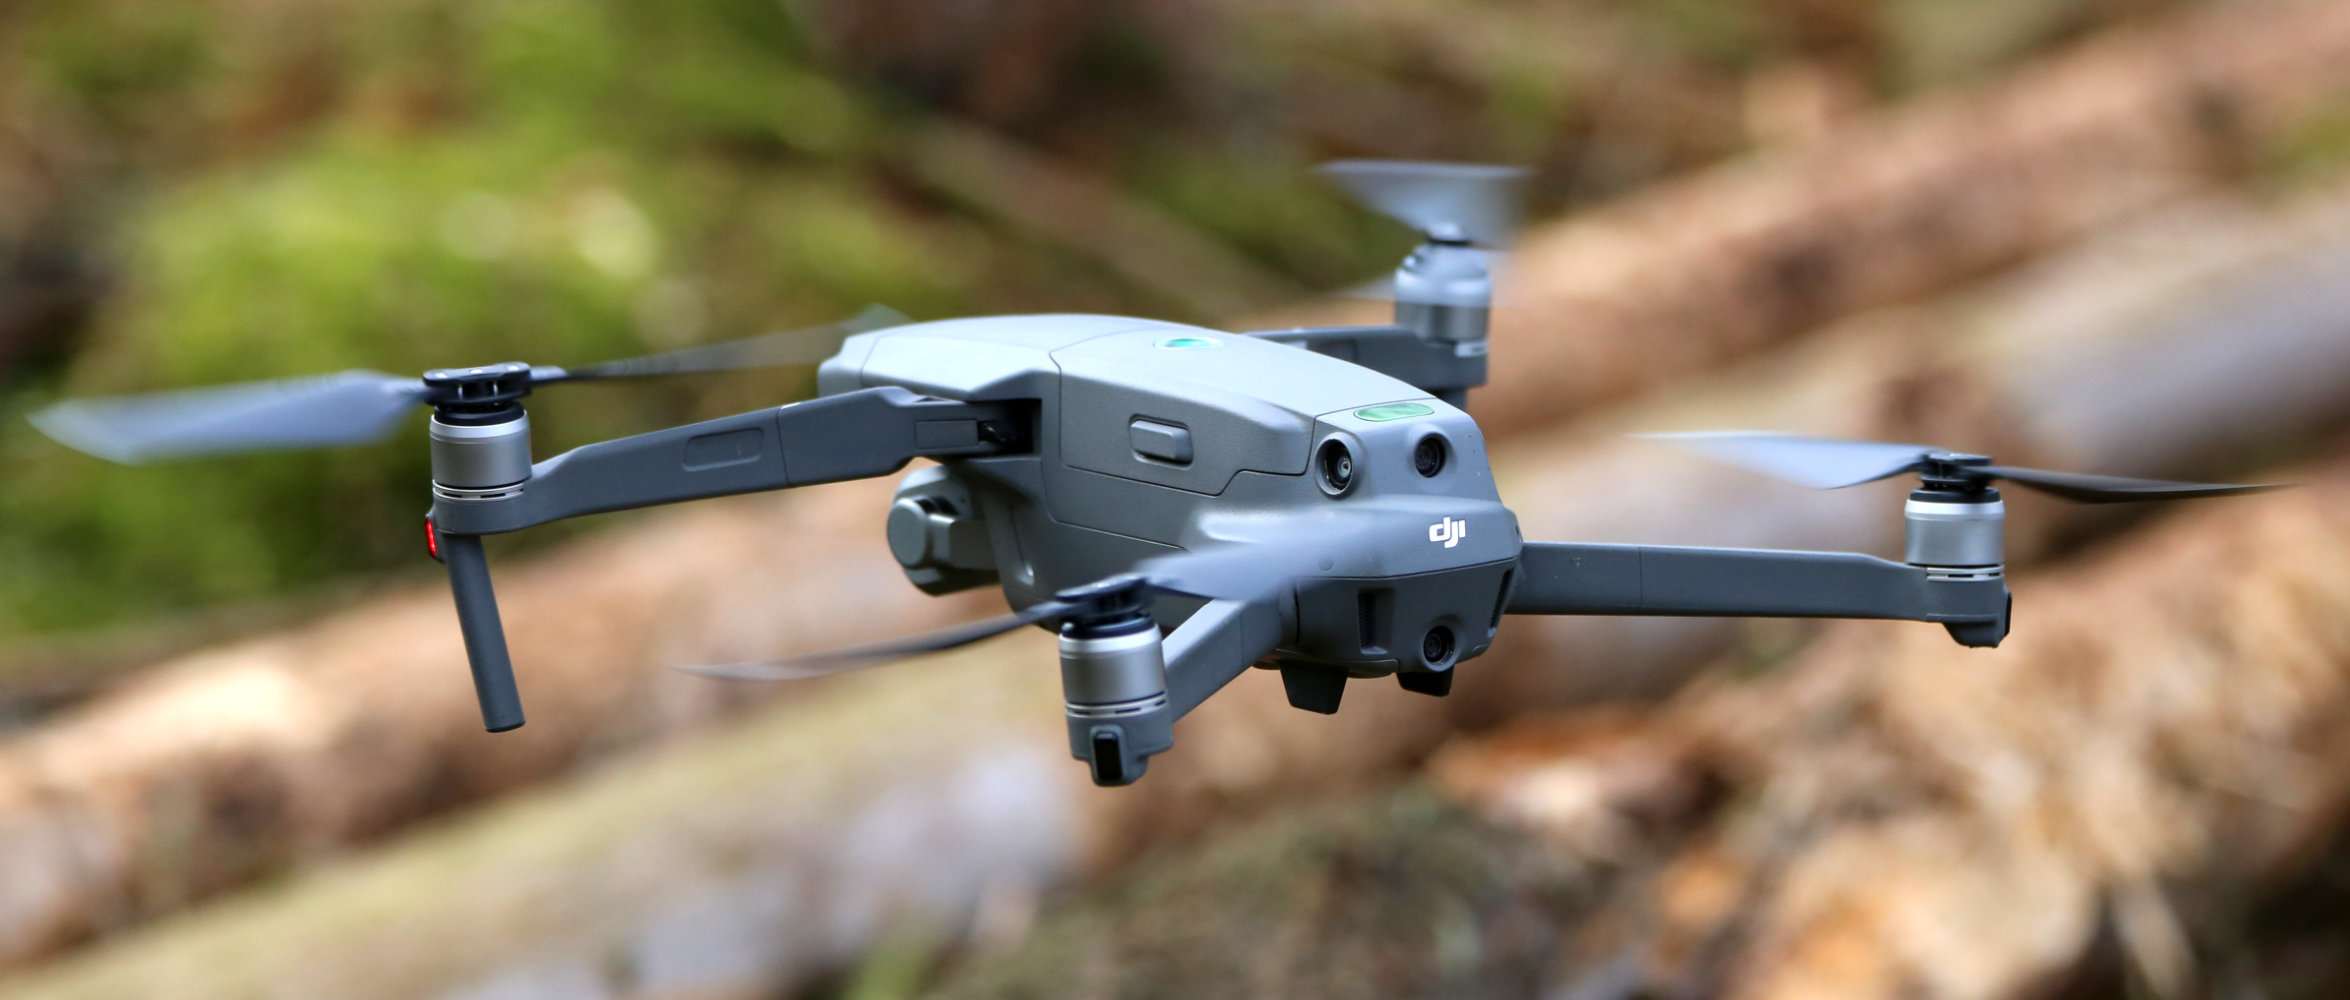 Eine Drohne schebt über liegenden Baumstämmen.